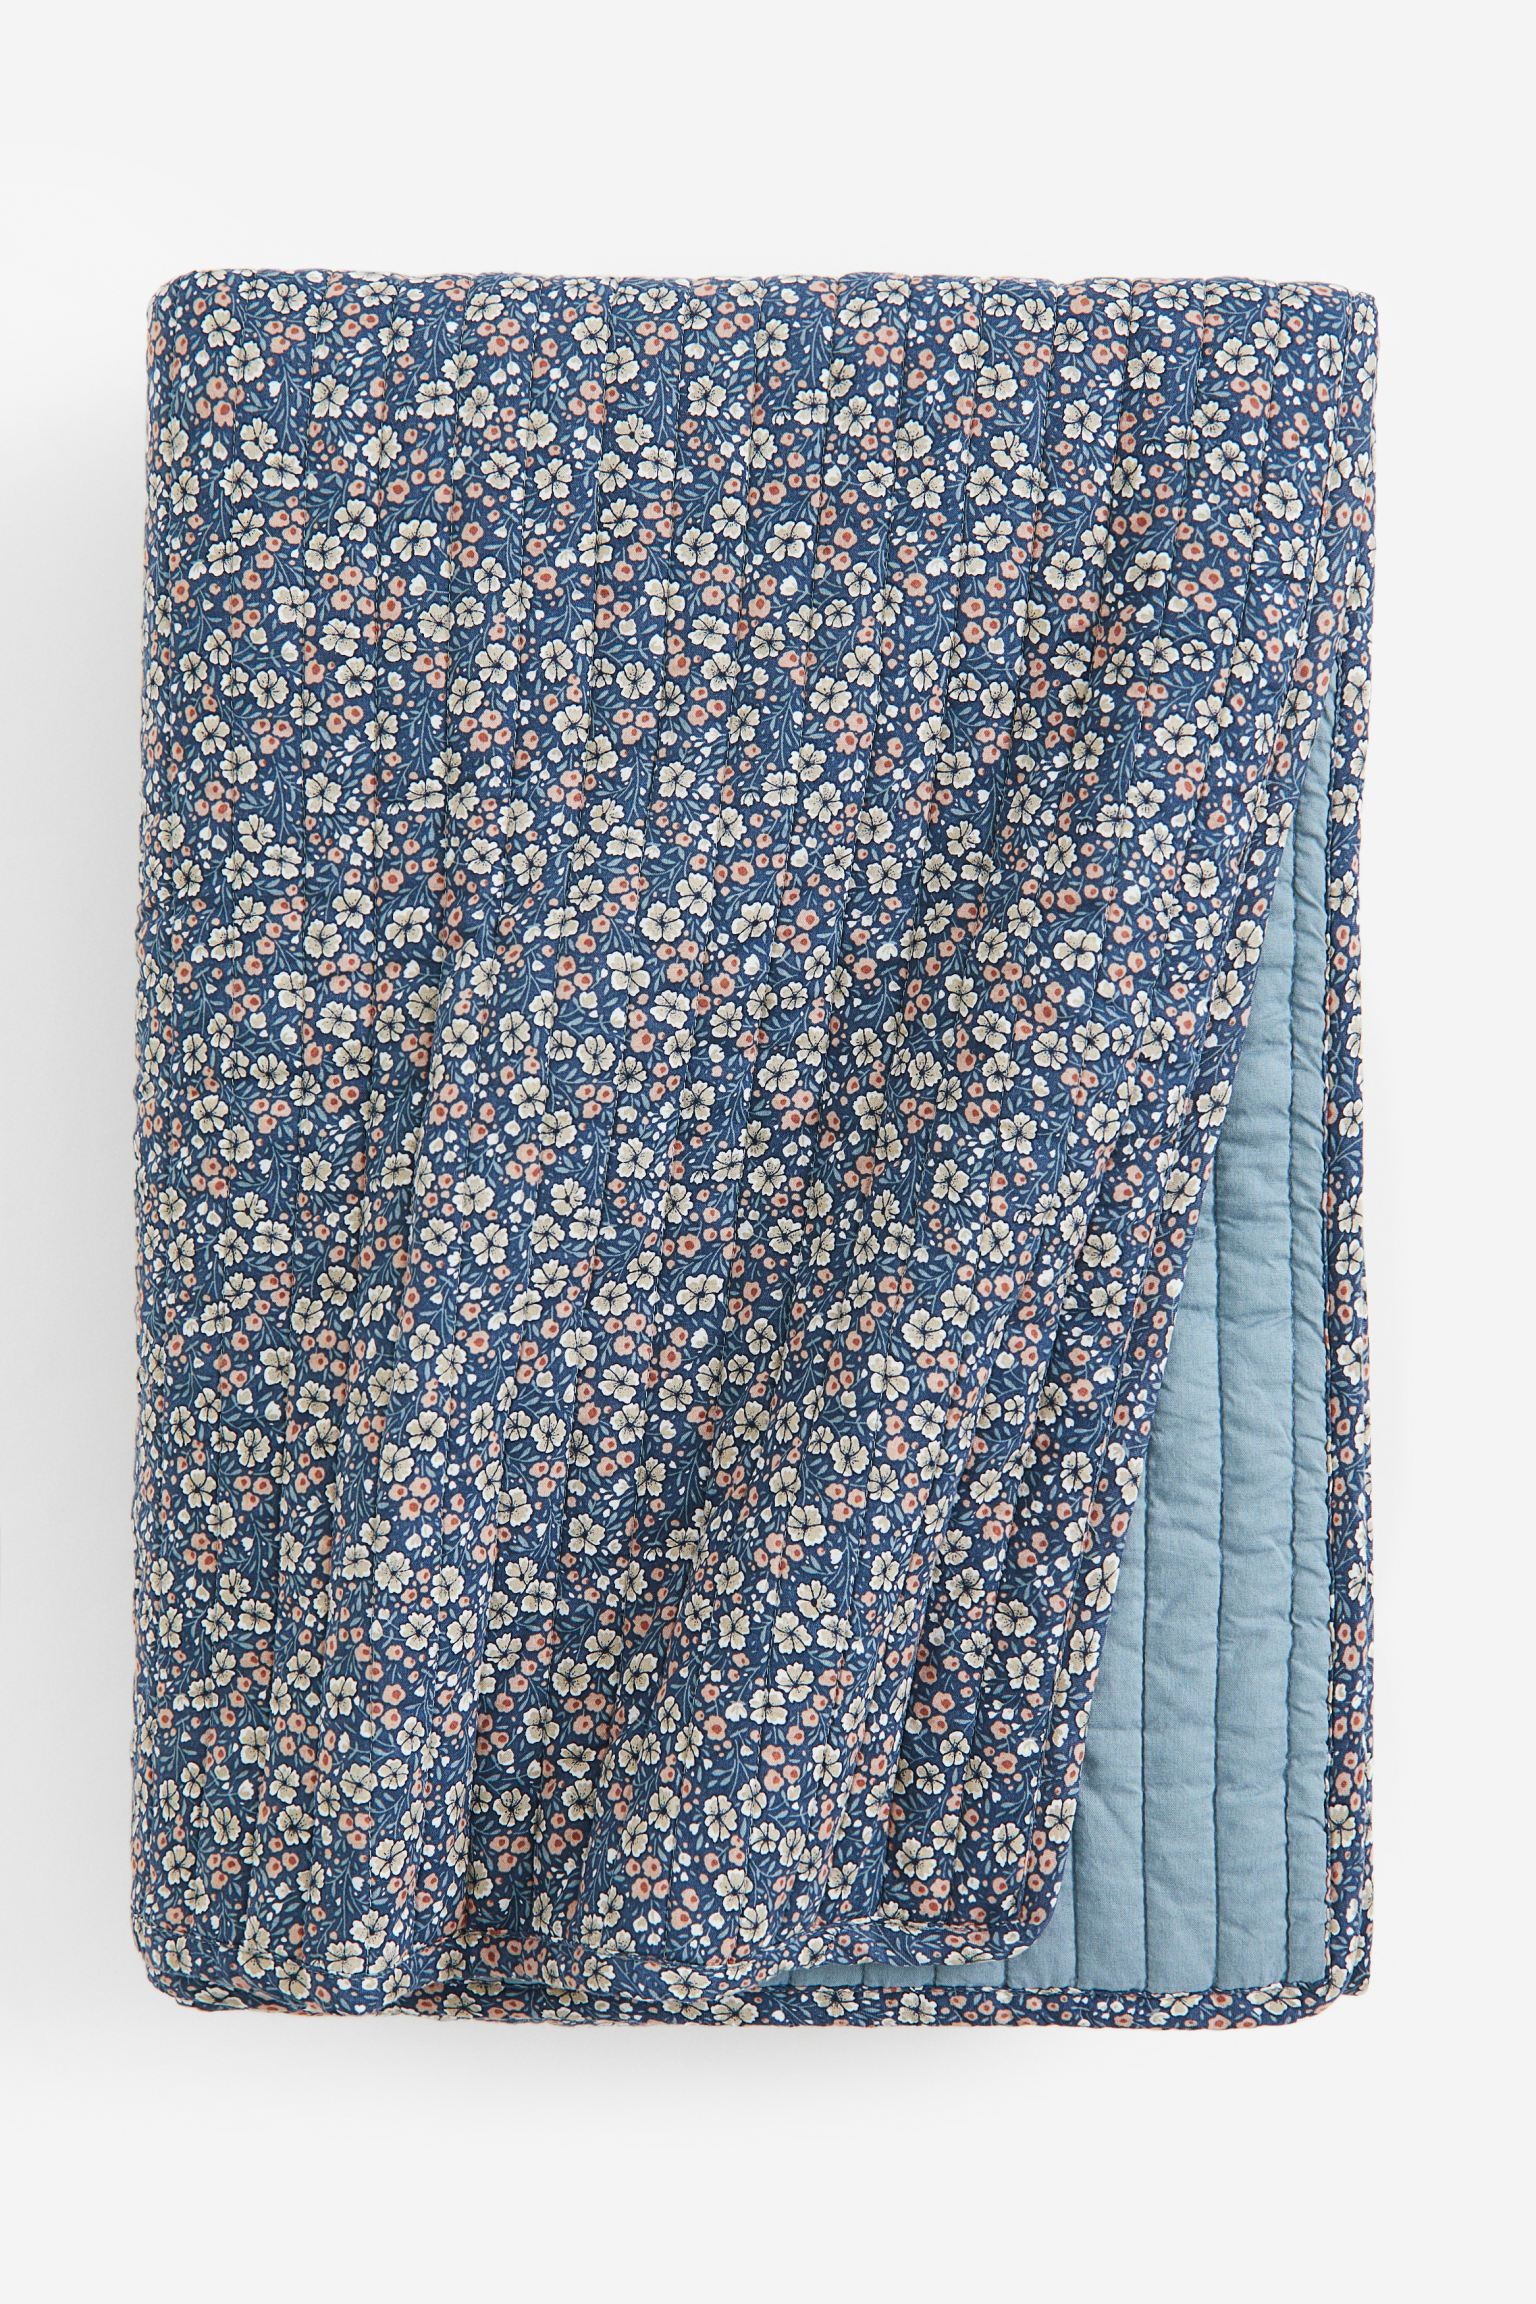 Стеганое покрывало на кровать, Синий/Цветы, 260x260